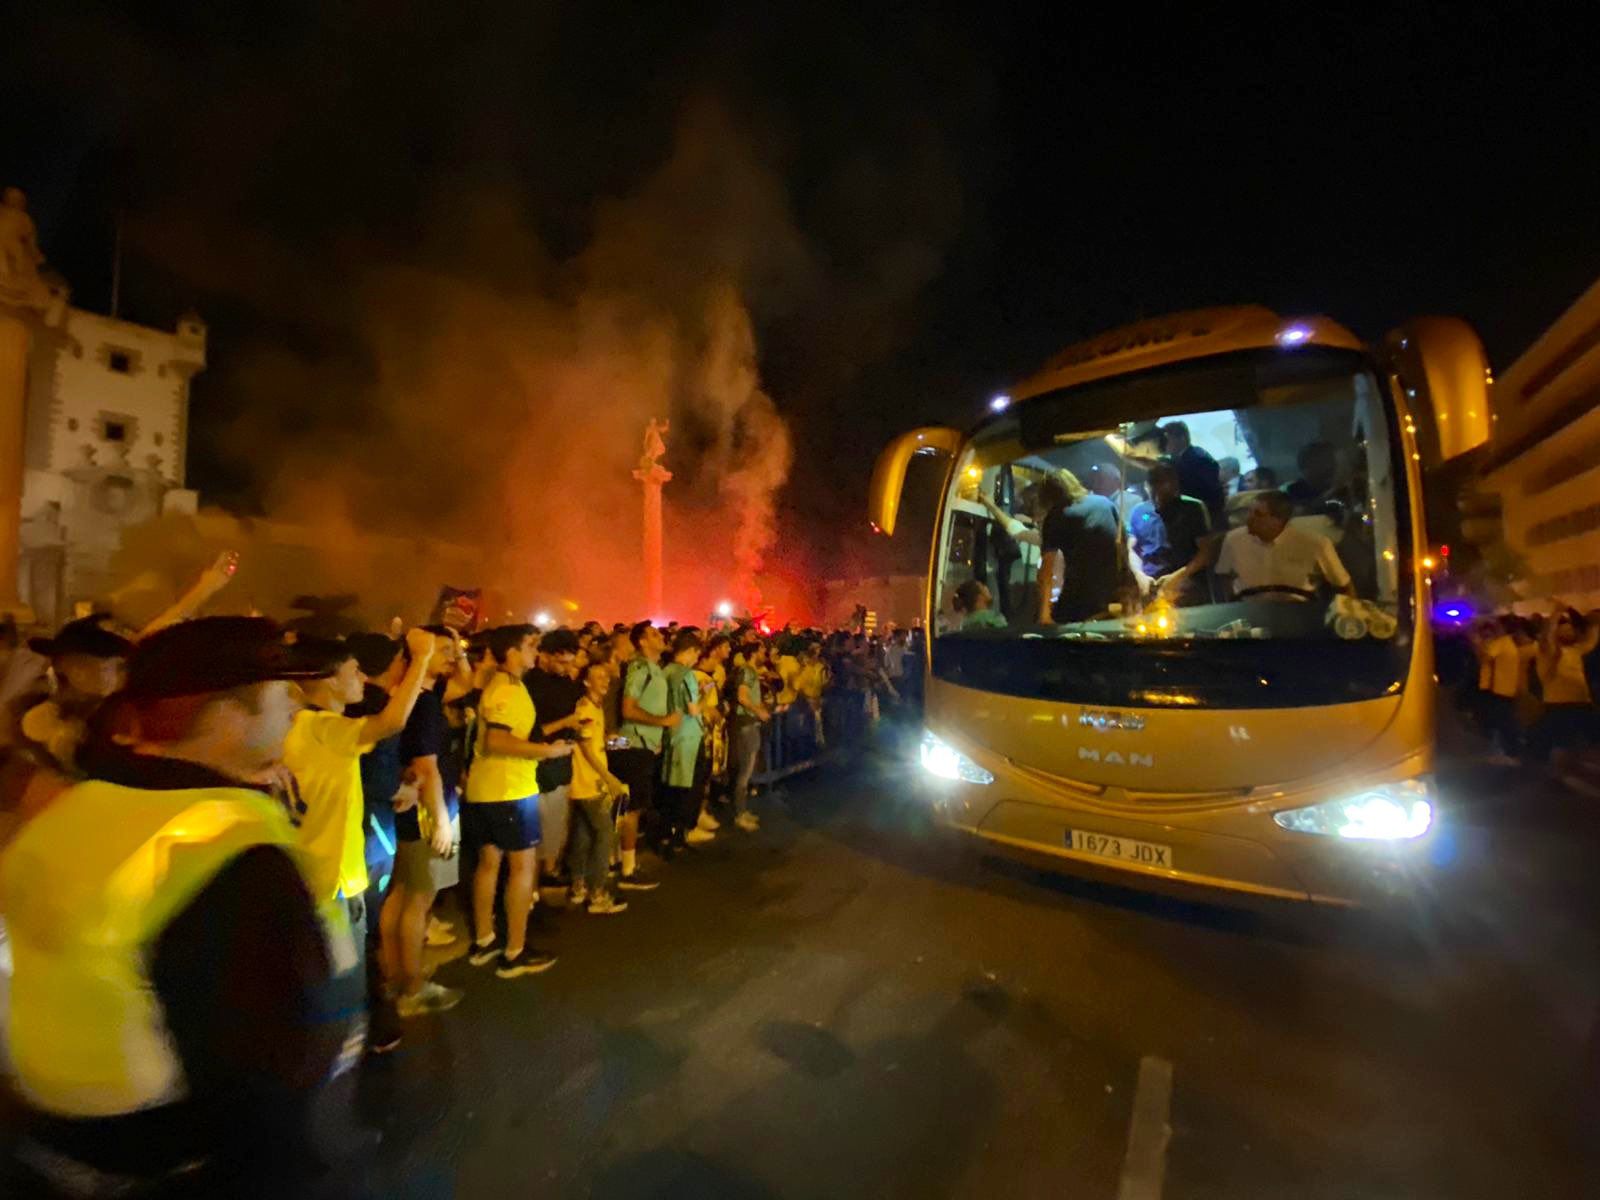 Larga noche de celebraciones en Cádiz. Llegada del autobús del Cádiz CF a Puerta Tierra, esta pasada madrugada, en una imagen oficial del club.